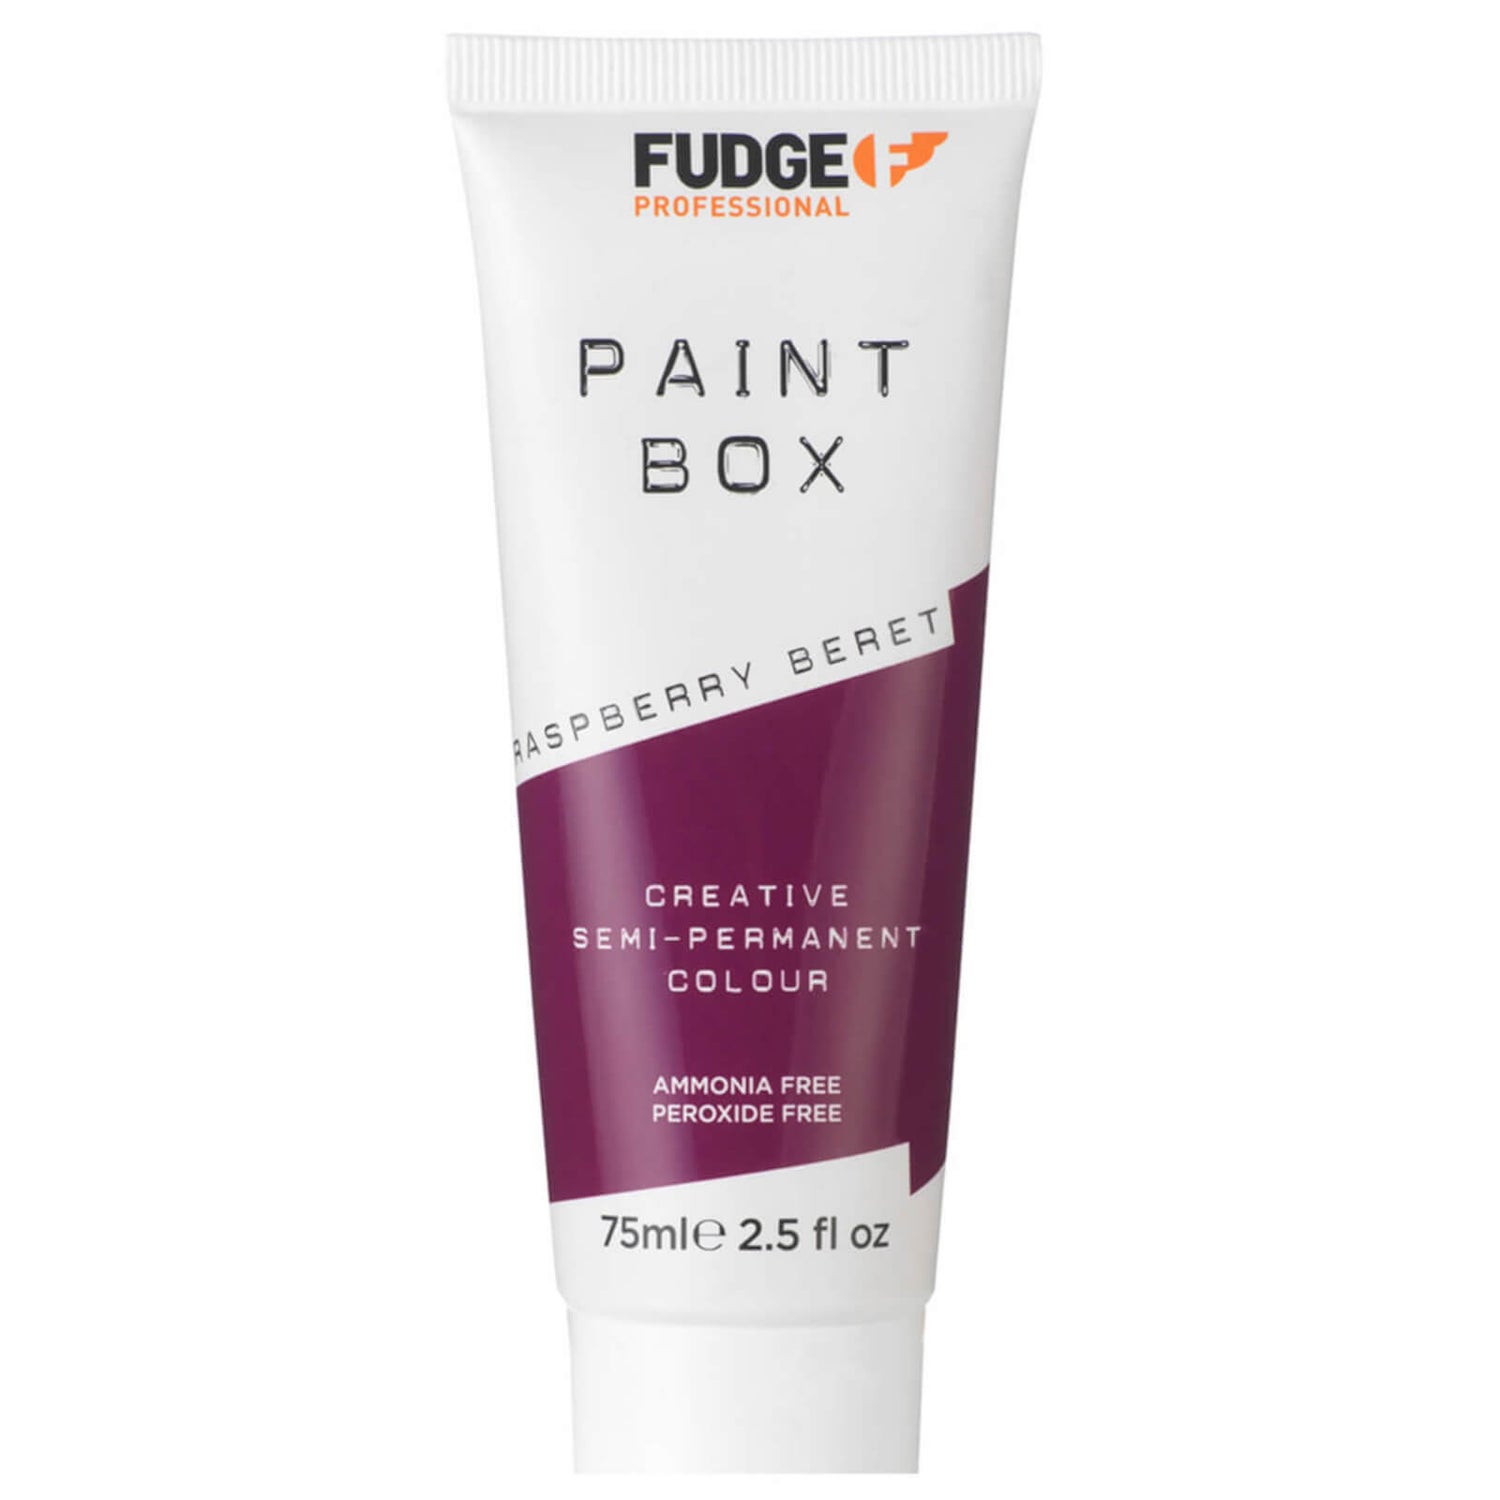 Fudge Paintbox Raspberry Beret (75 ml)